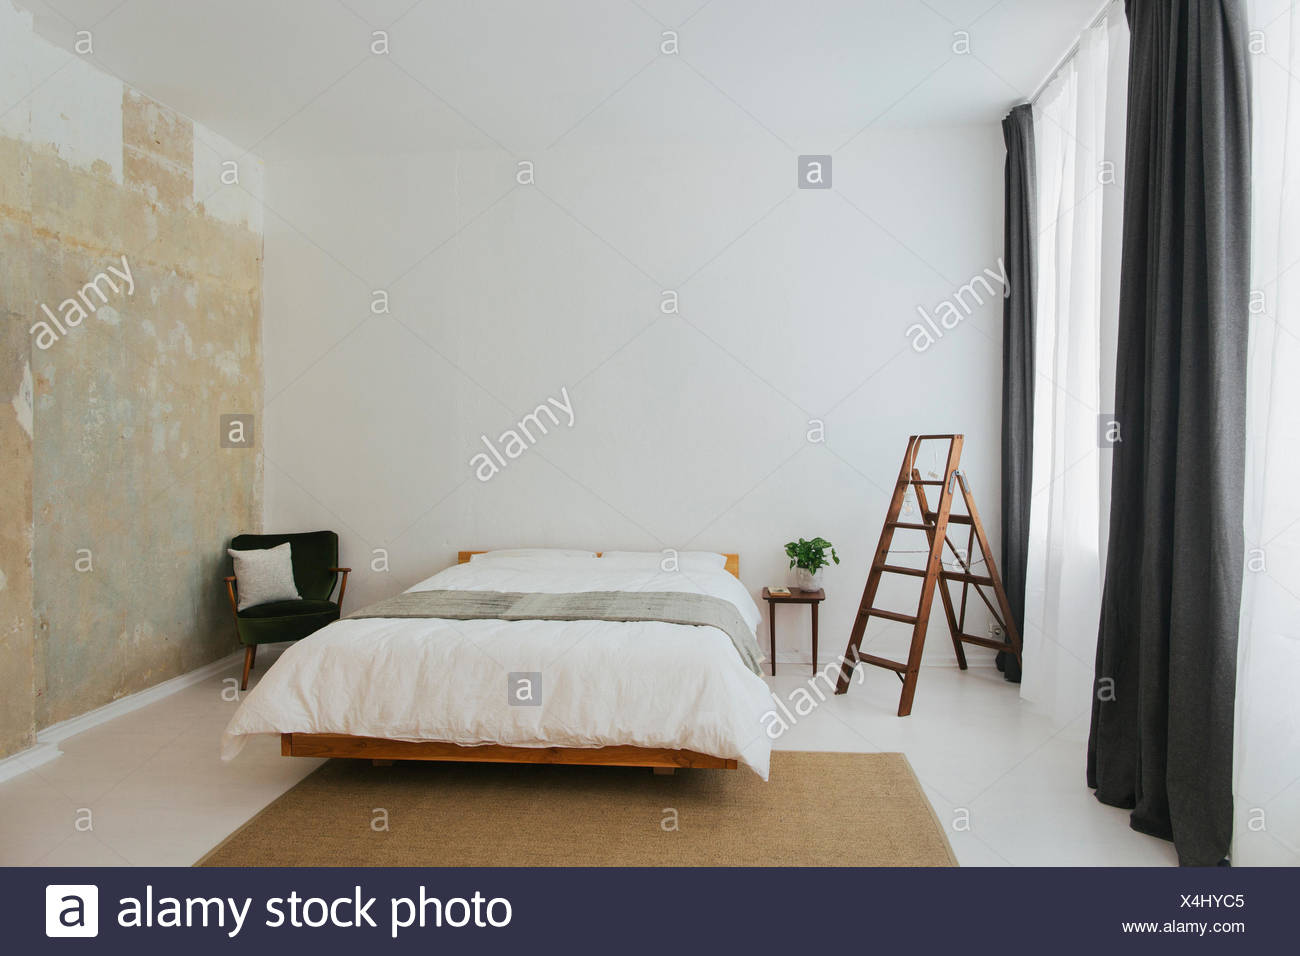 Minimalist Scandinavian Design Bedroom Stock Photo Alamy,Kitchen And Bathroom Tiles Design